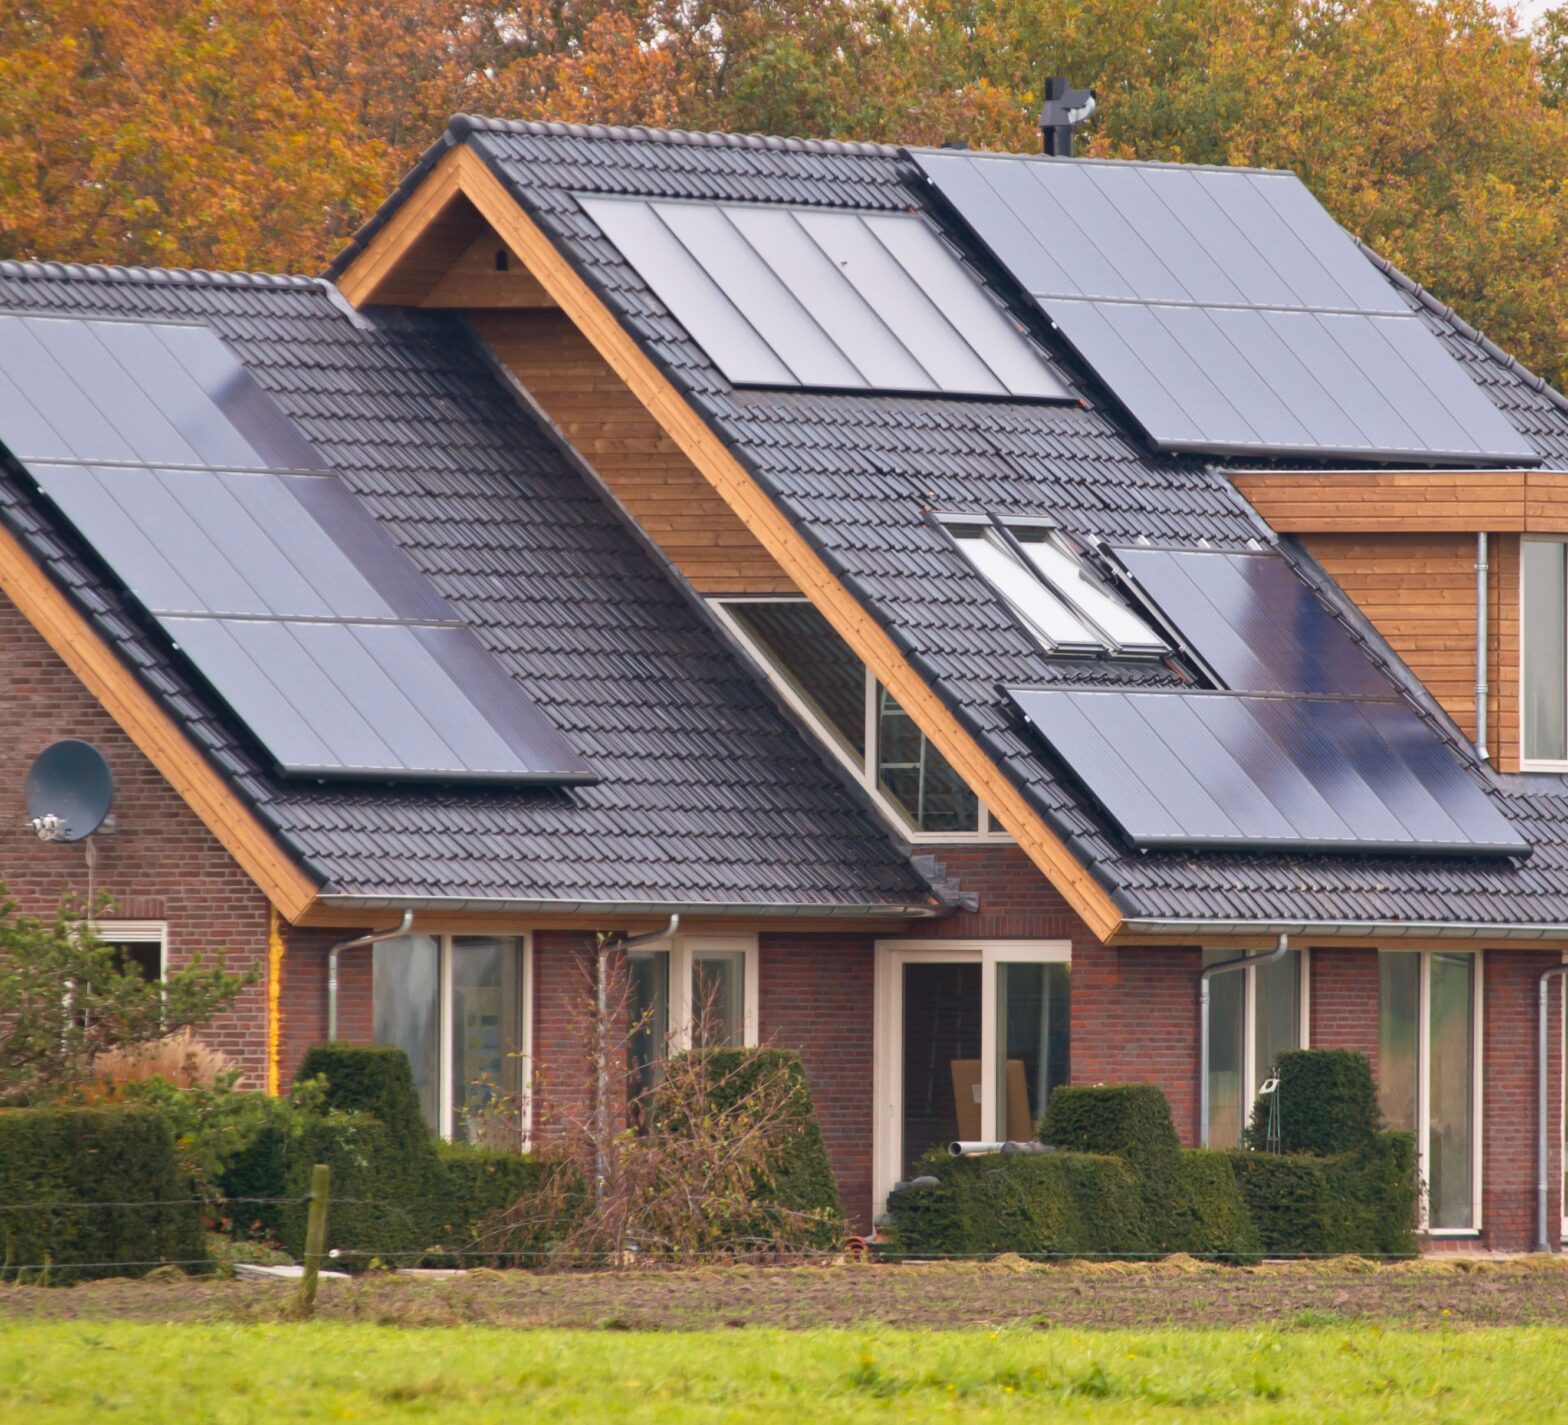 Instalación de Placas Solares en Zonas Rurales: Cómo Aprovechar la Energía Solar en Áreas sin Acceso a la Red Eléctrica